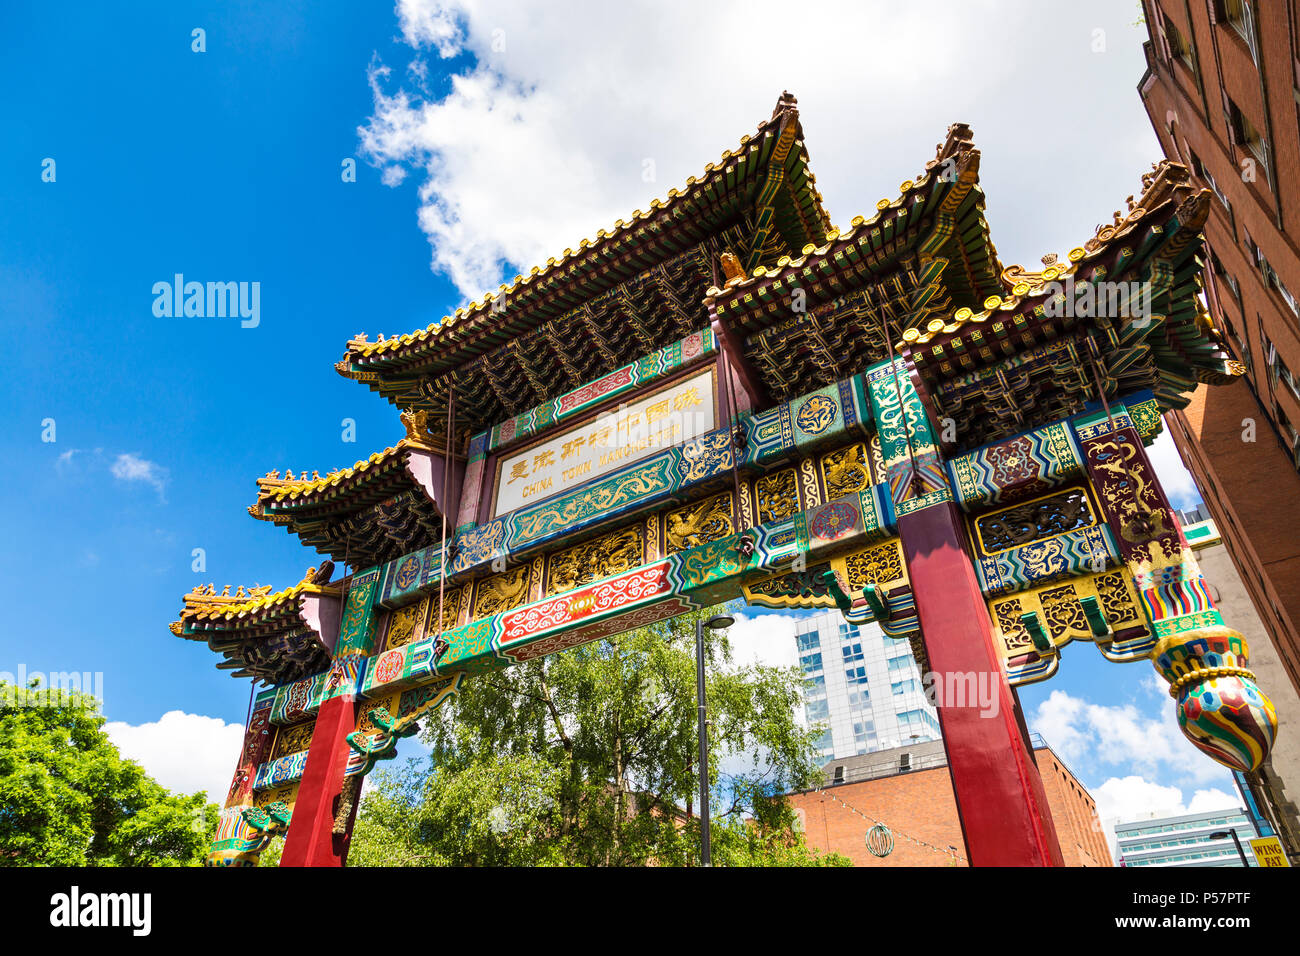 Chinatown gate, grande arche impériale de Beijing doués, Manchester, UK Banque D'Images